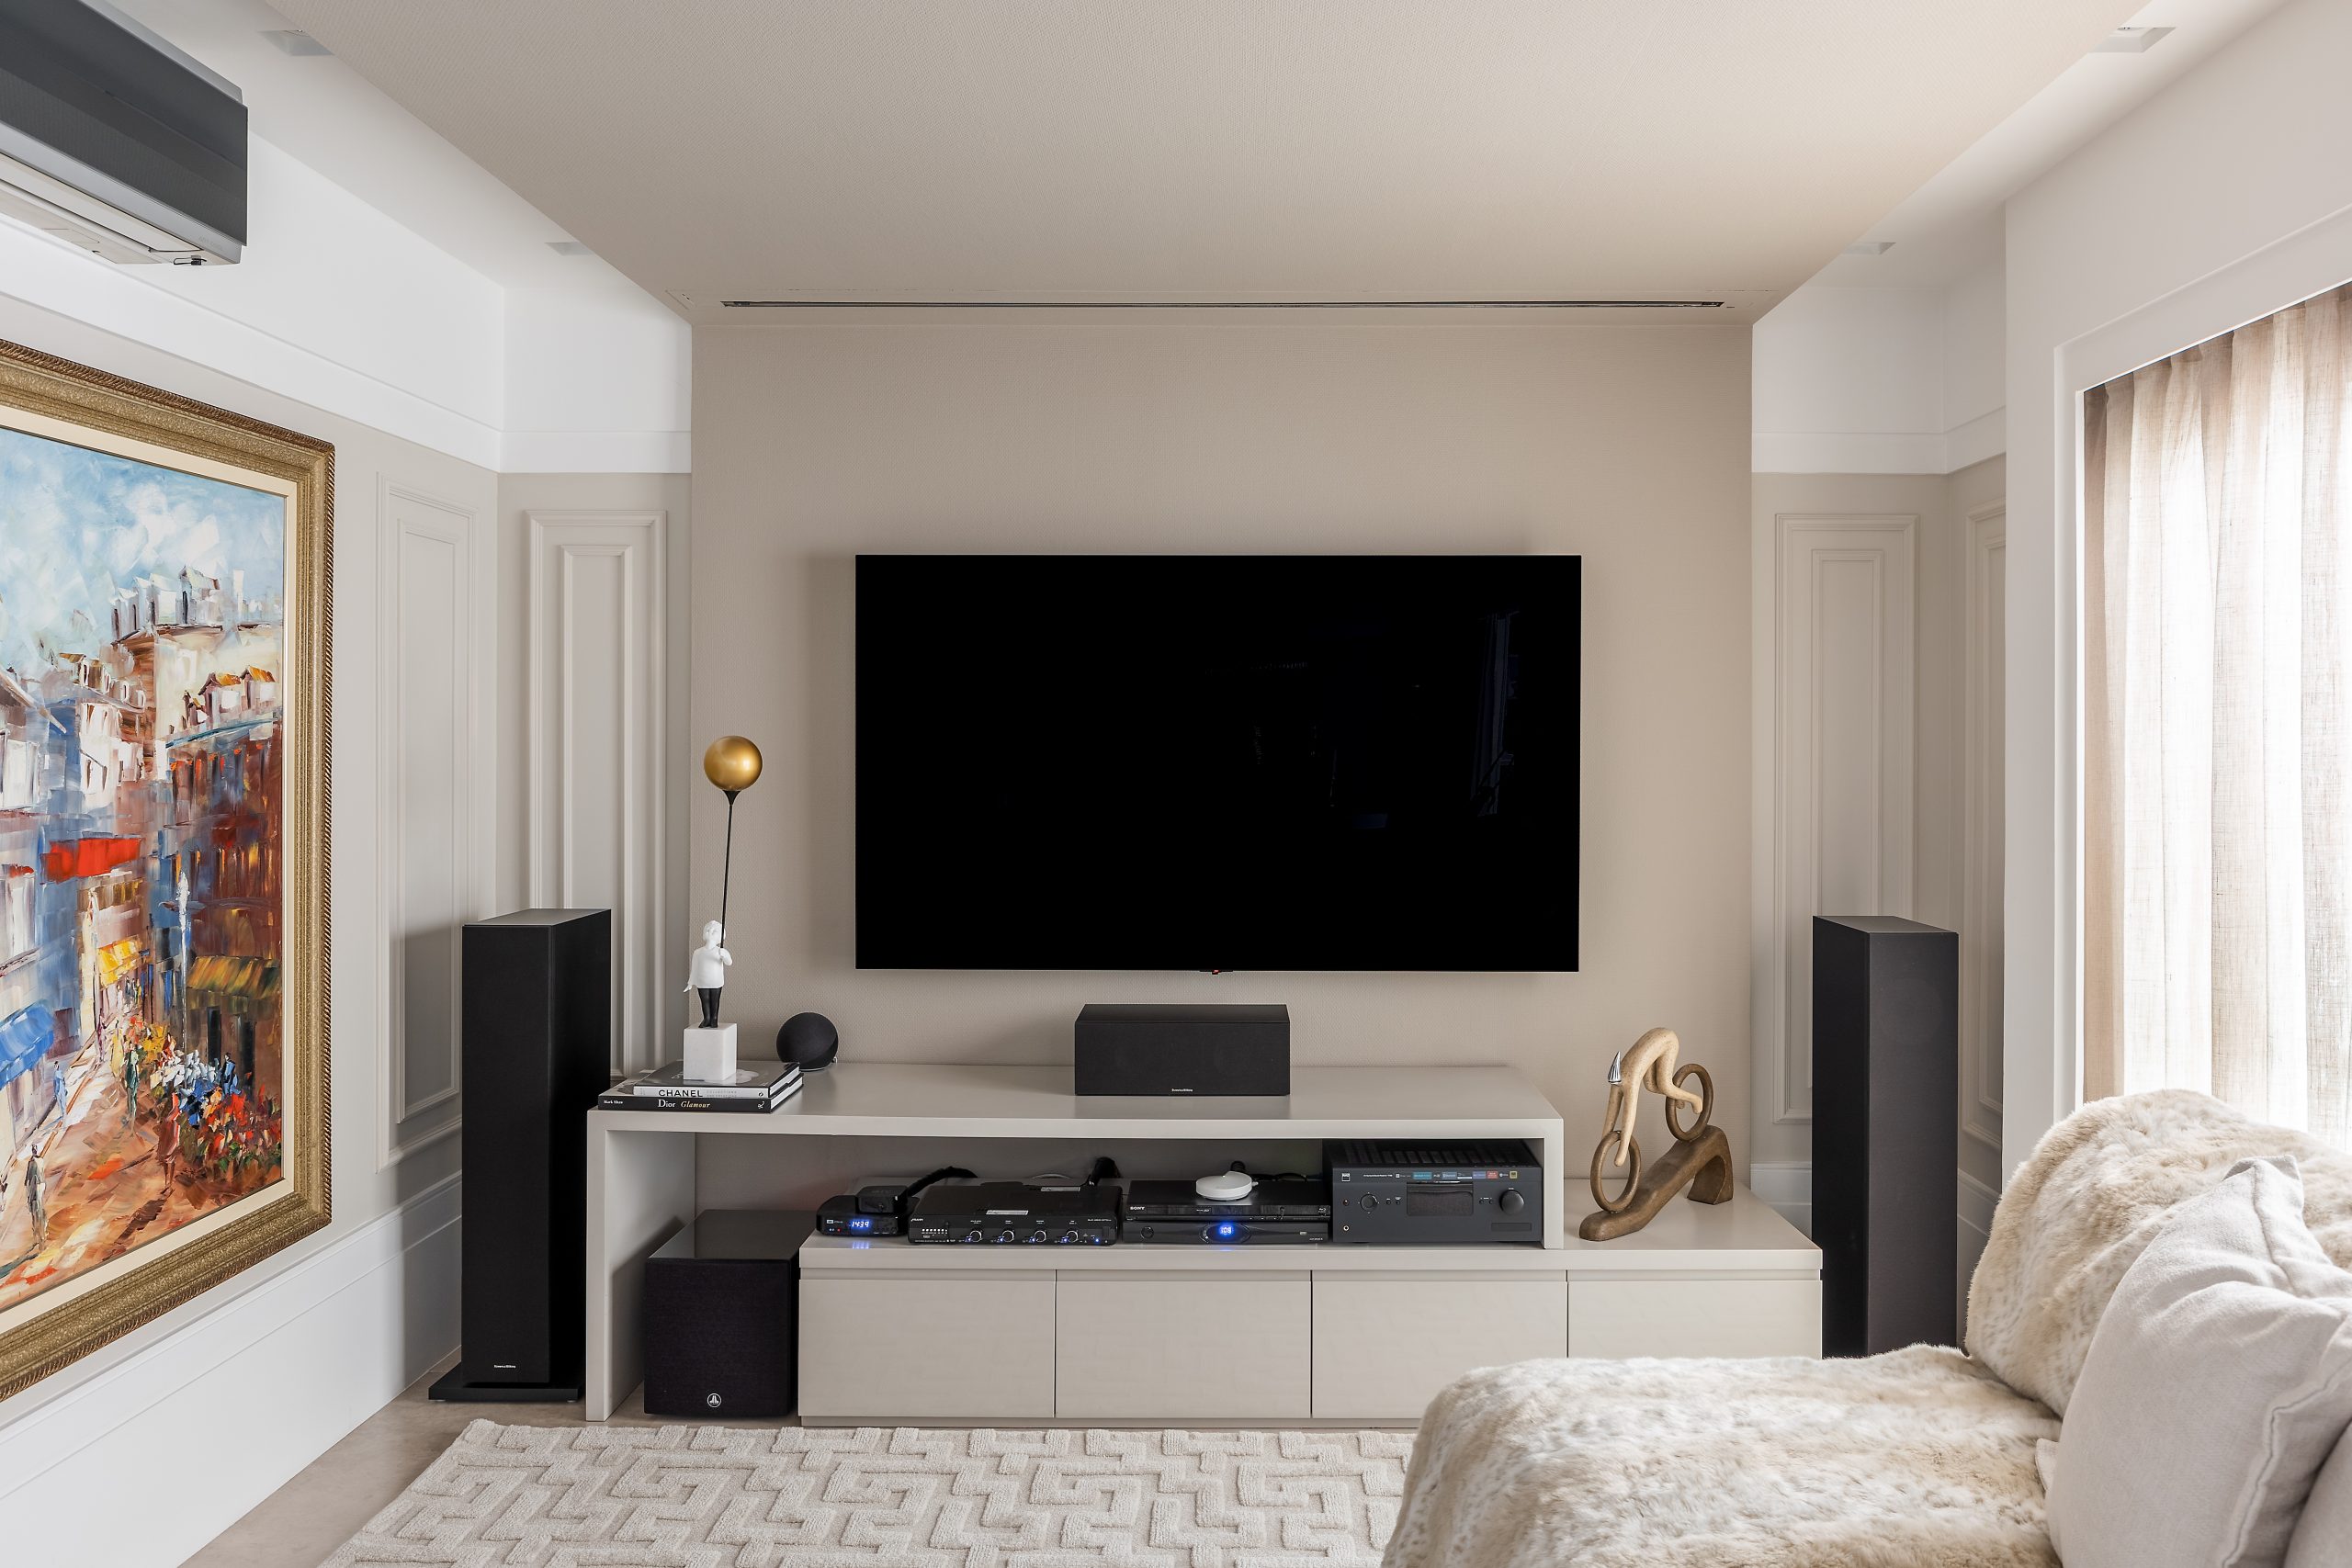 Sala de estar em cor neutra com painel de TV até o teto